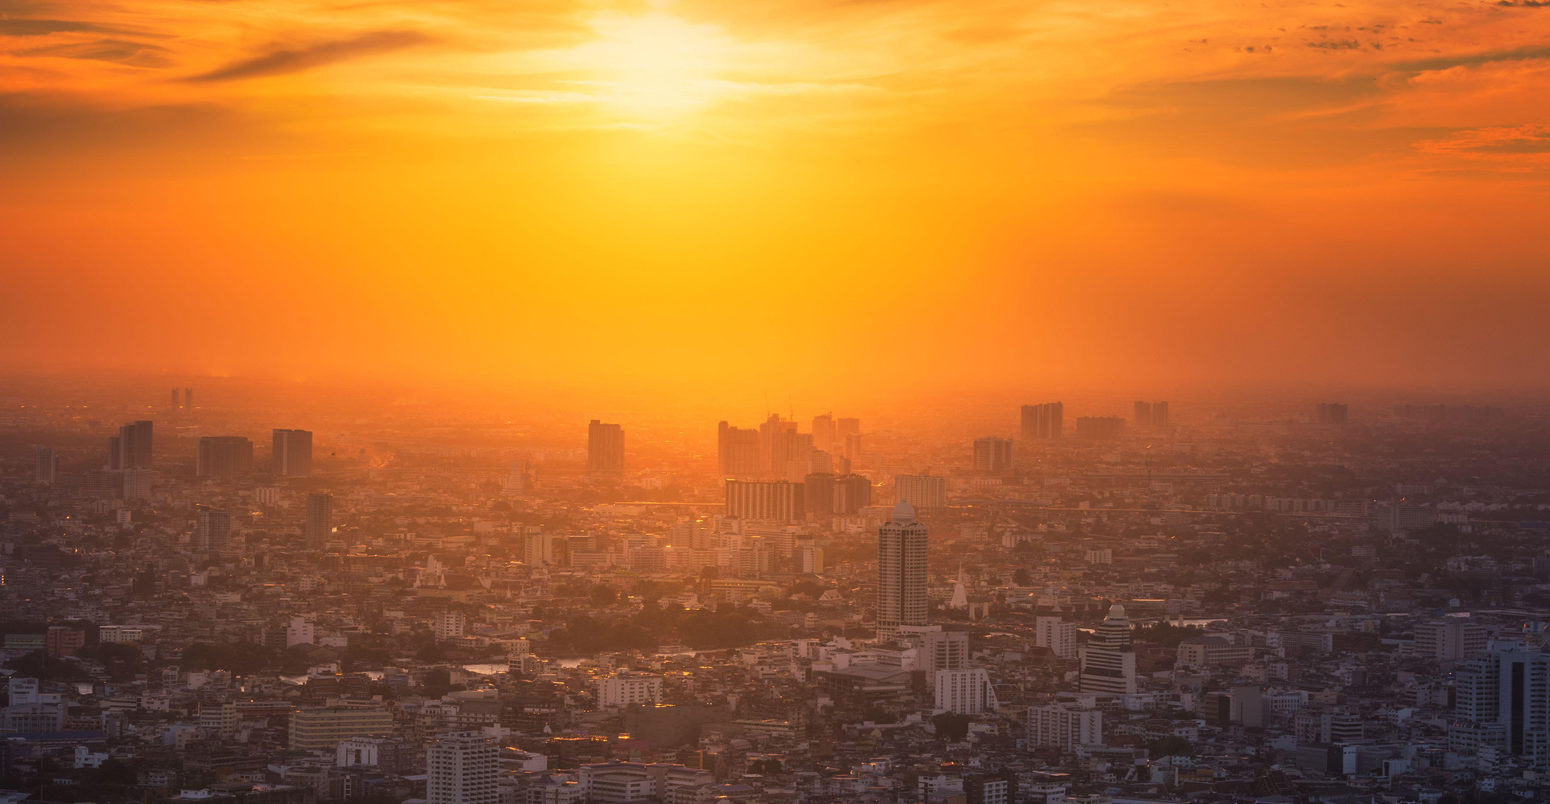 Bangkok at sunset.